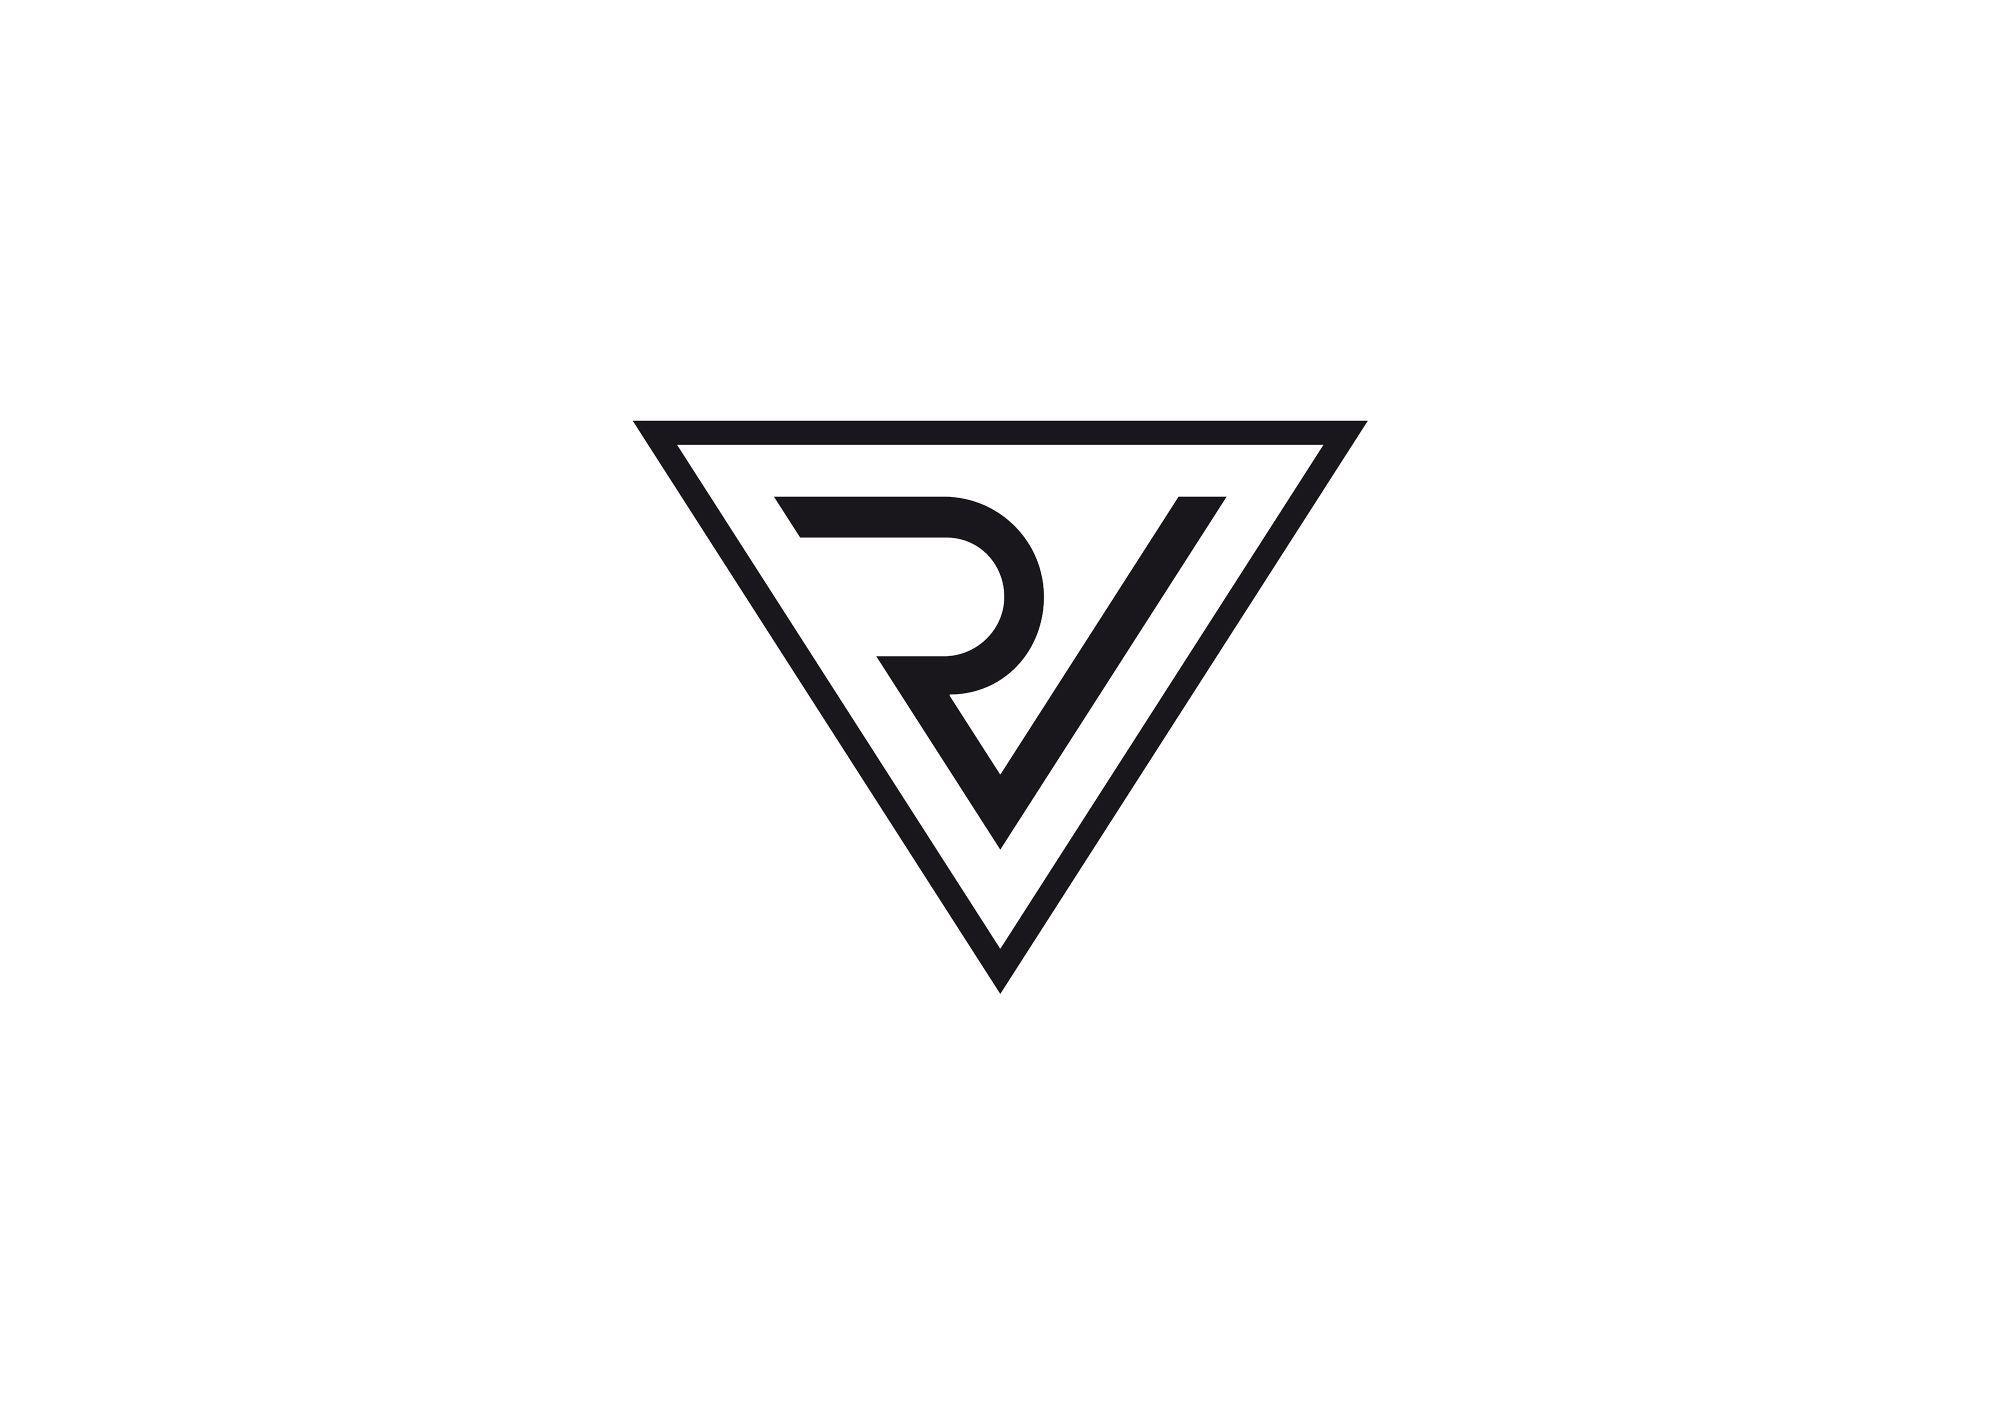 Pflaum Logo - Pflaum Verlag - Icon - Sebastian Wolter Design #logo #icon ...